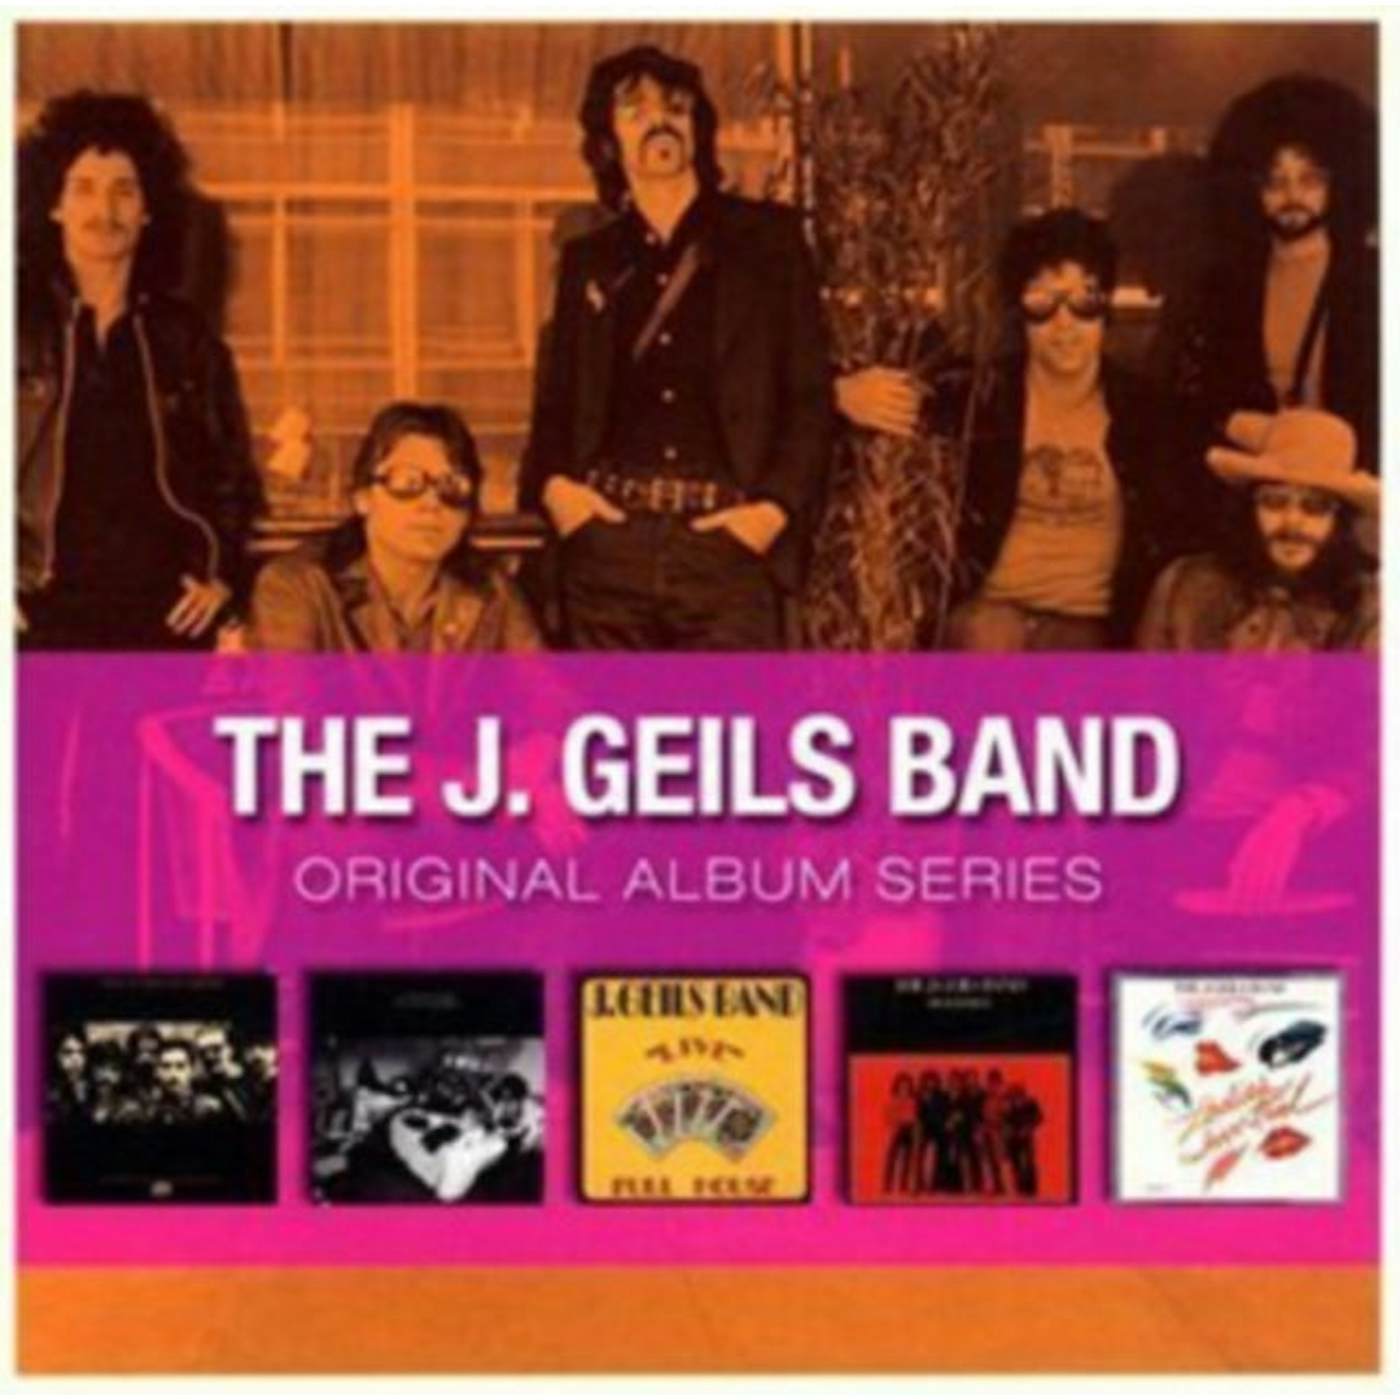 The J. Geils Band CD - Original Album Series